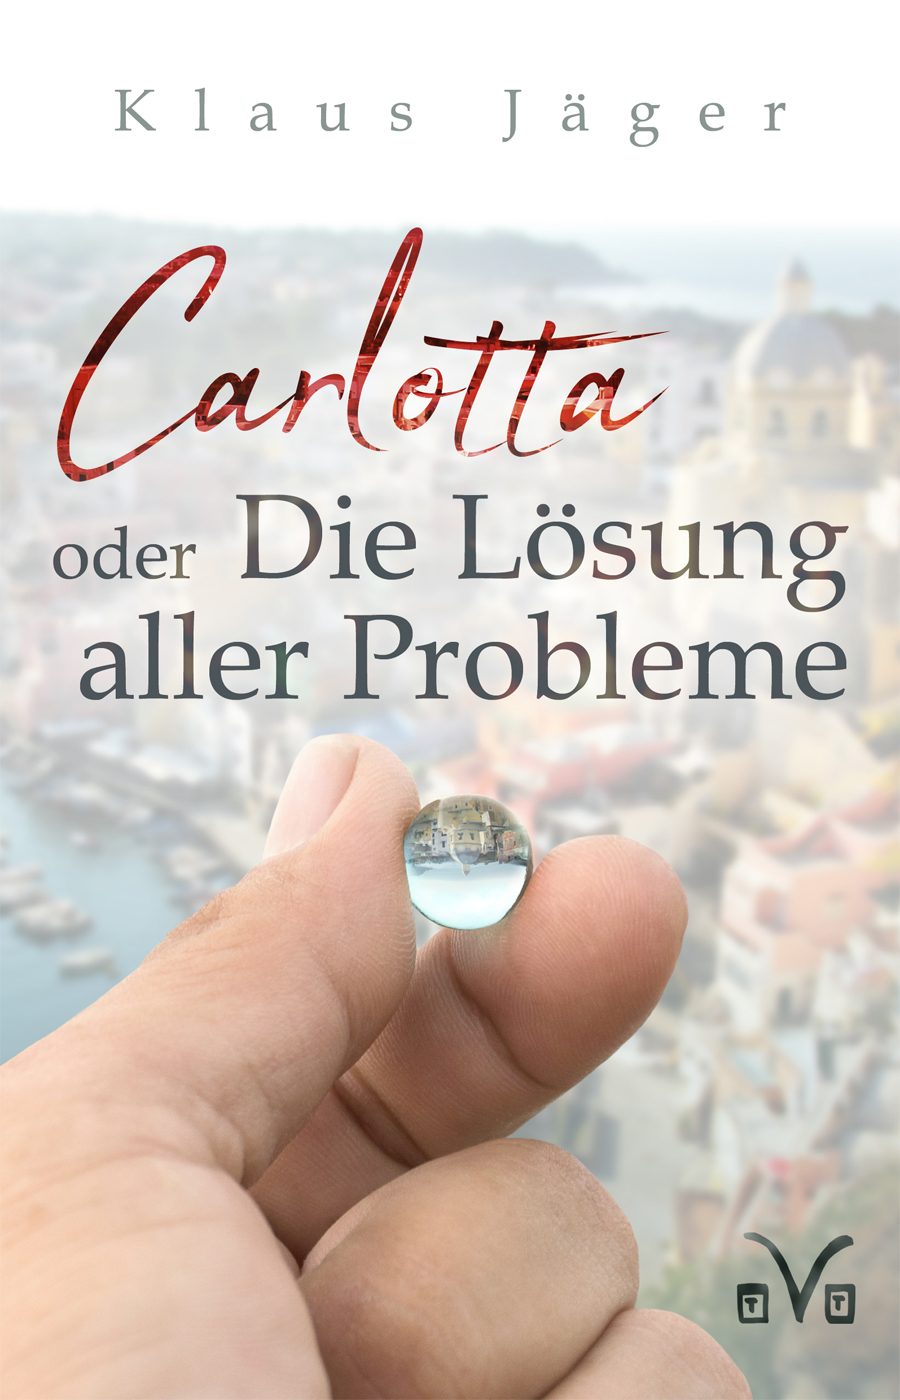 Carlotta oder die Lösung aller Probleme - Tasten und Typen